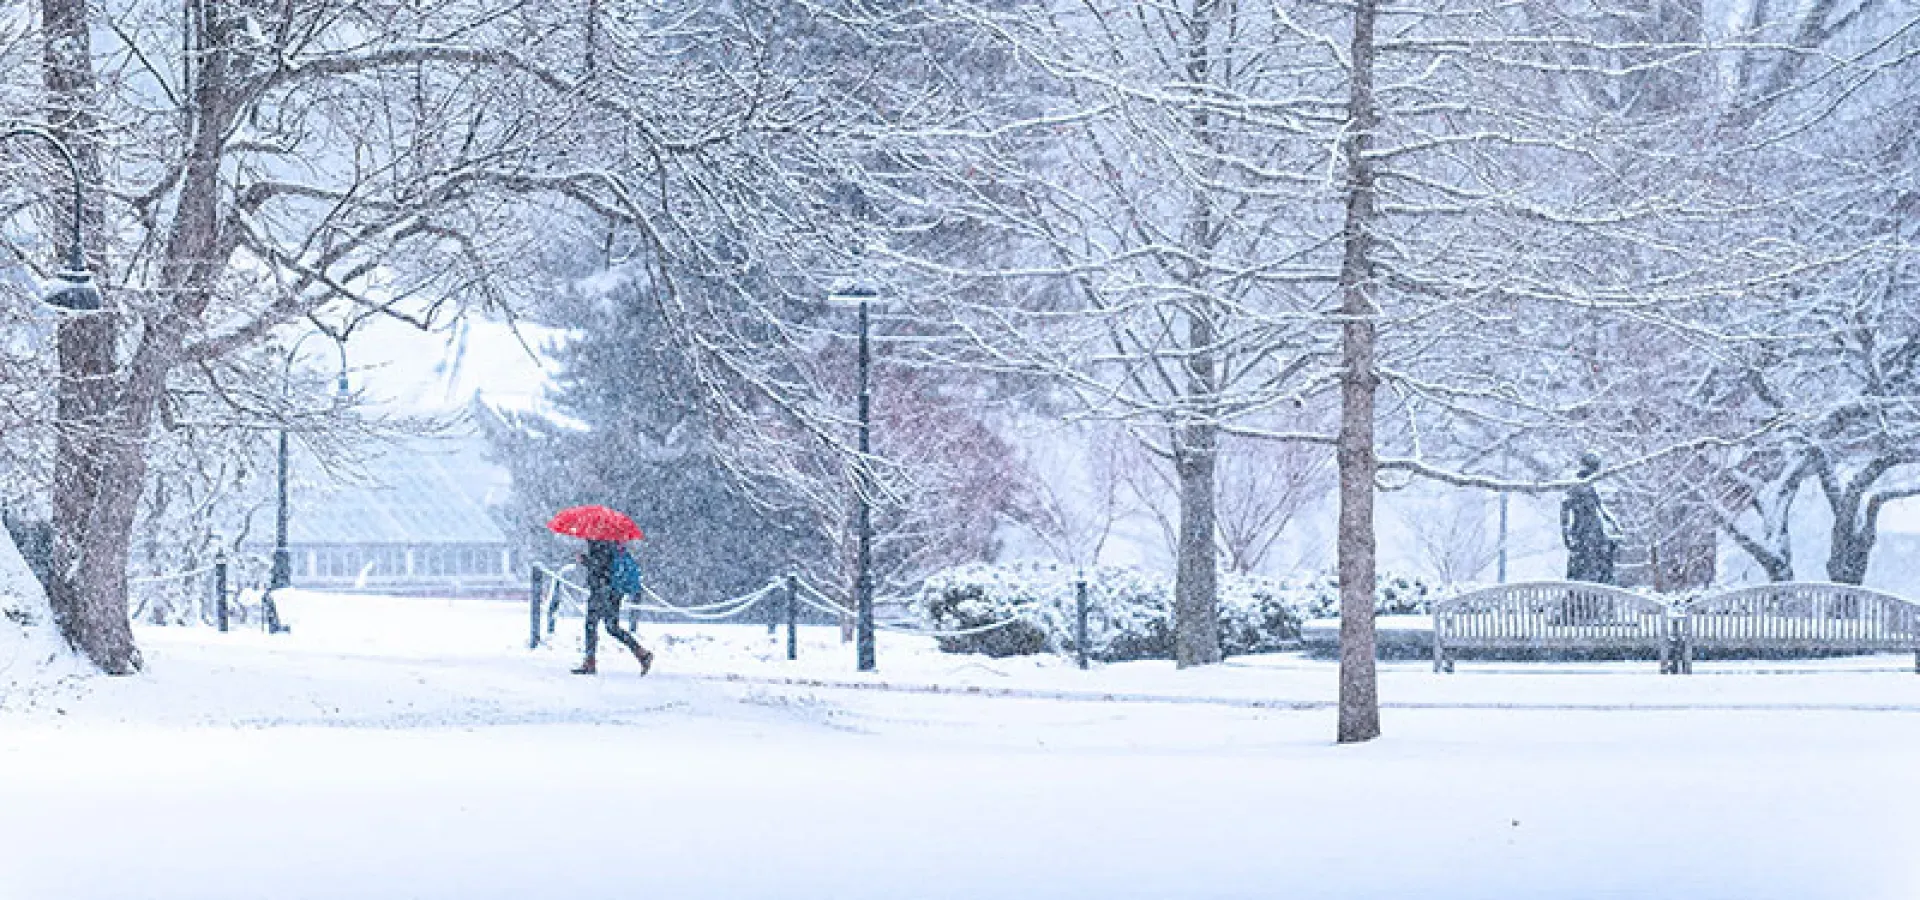 一个打着红伞的单身学生在暴风雪中行走